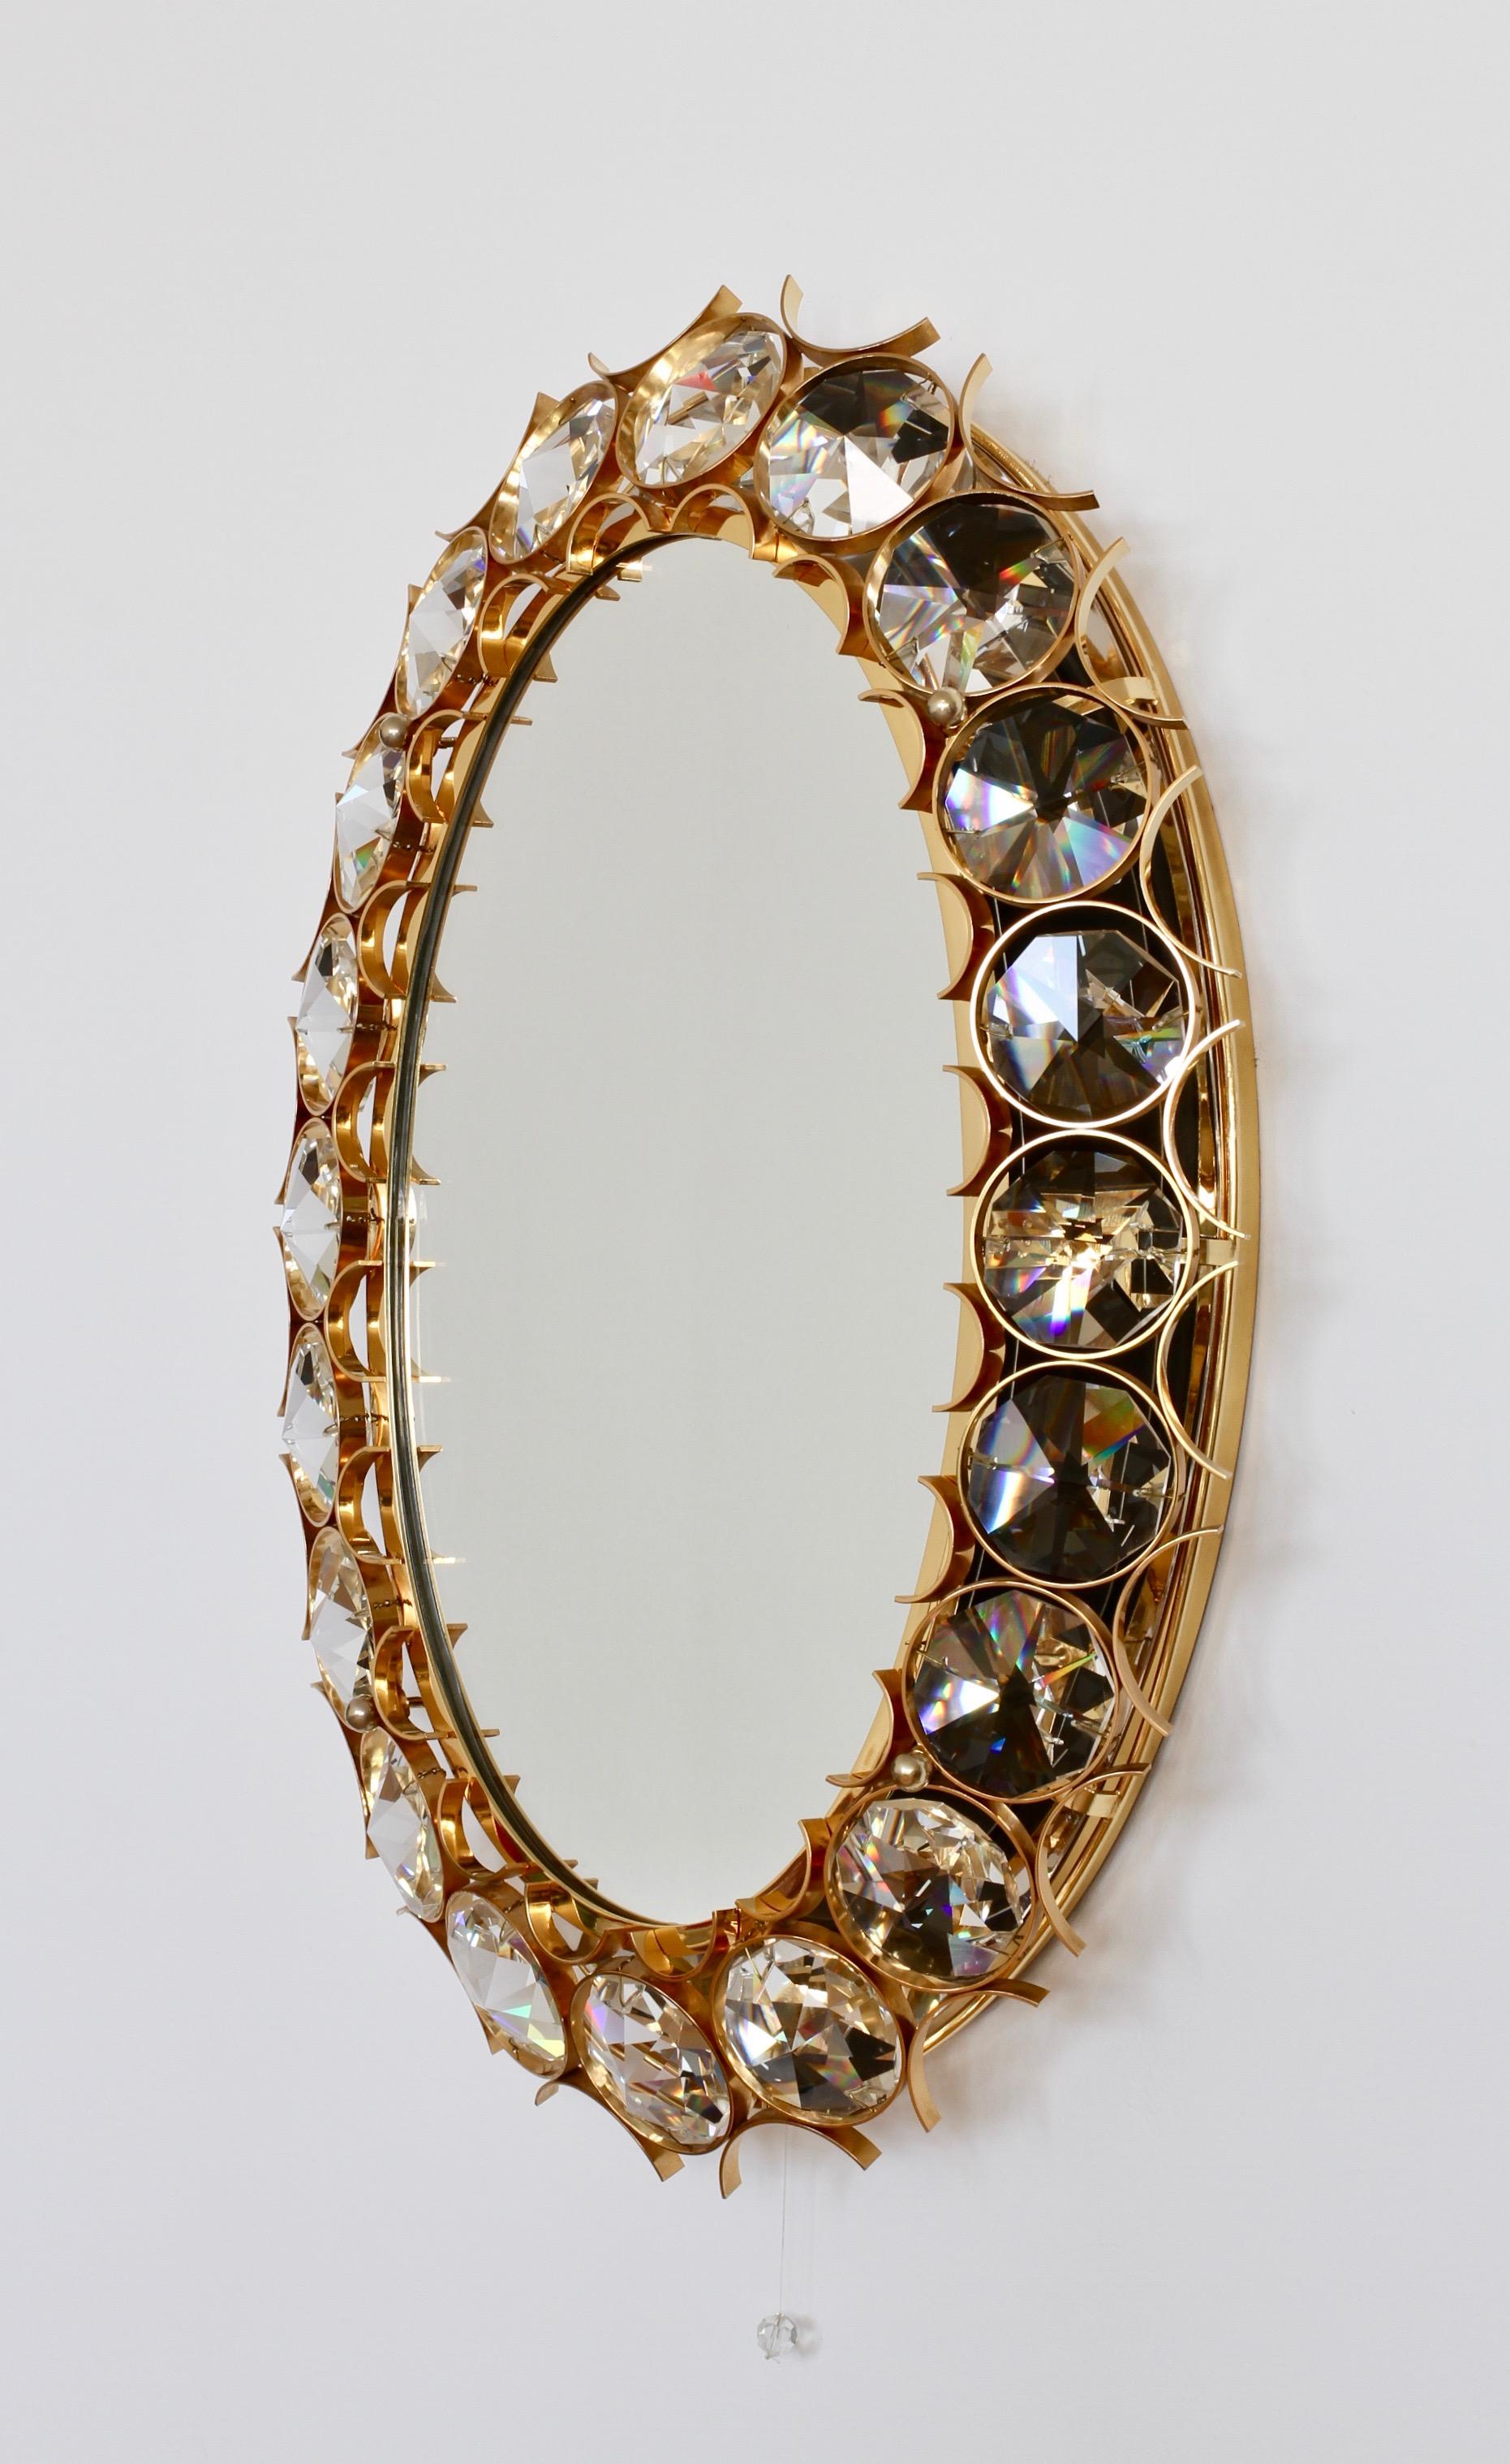 Superbe miroir mural rétro-éclairé de forme ovale du milieu du siècle, en laiton doré et cristal, de Palwa, Allemagne, vers 1965-1975. Parfait pour le style Hollywood Regency, il n'y a pas de meilleure combinaison que l'or et le cristal pour